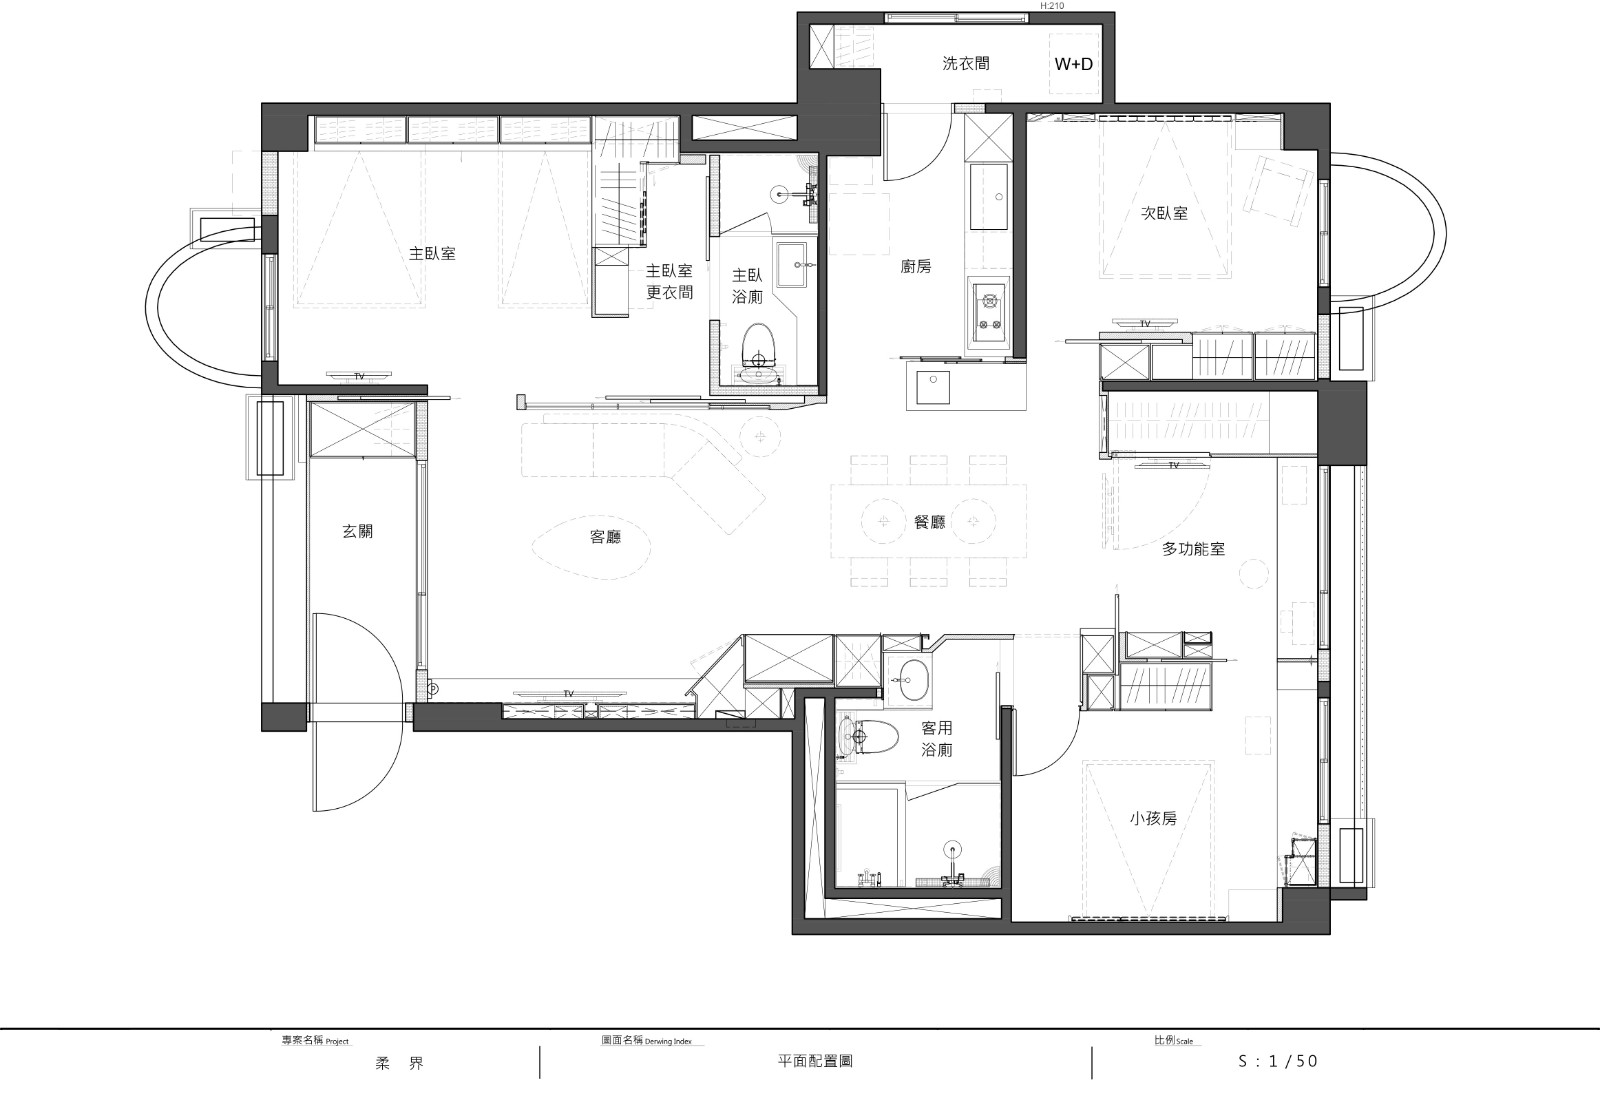 155现代四房装修效果图,绿地新里城装修案例效果图-美广网(图1)